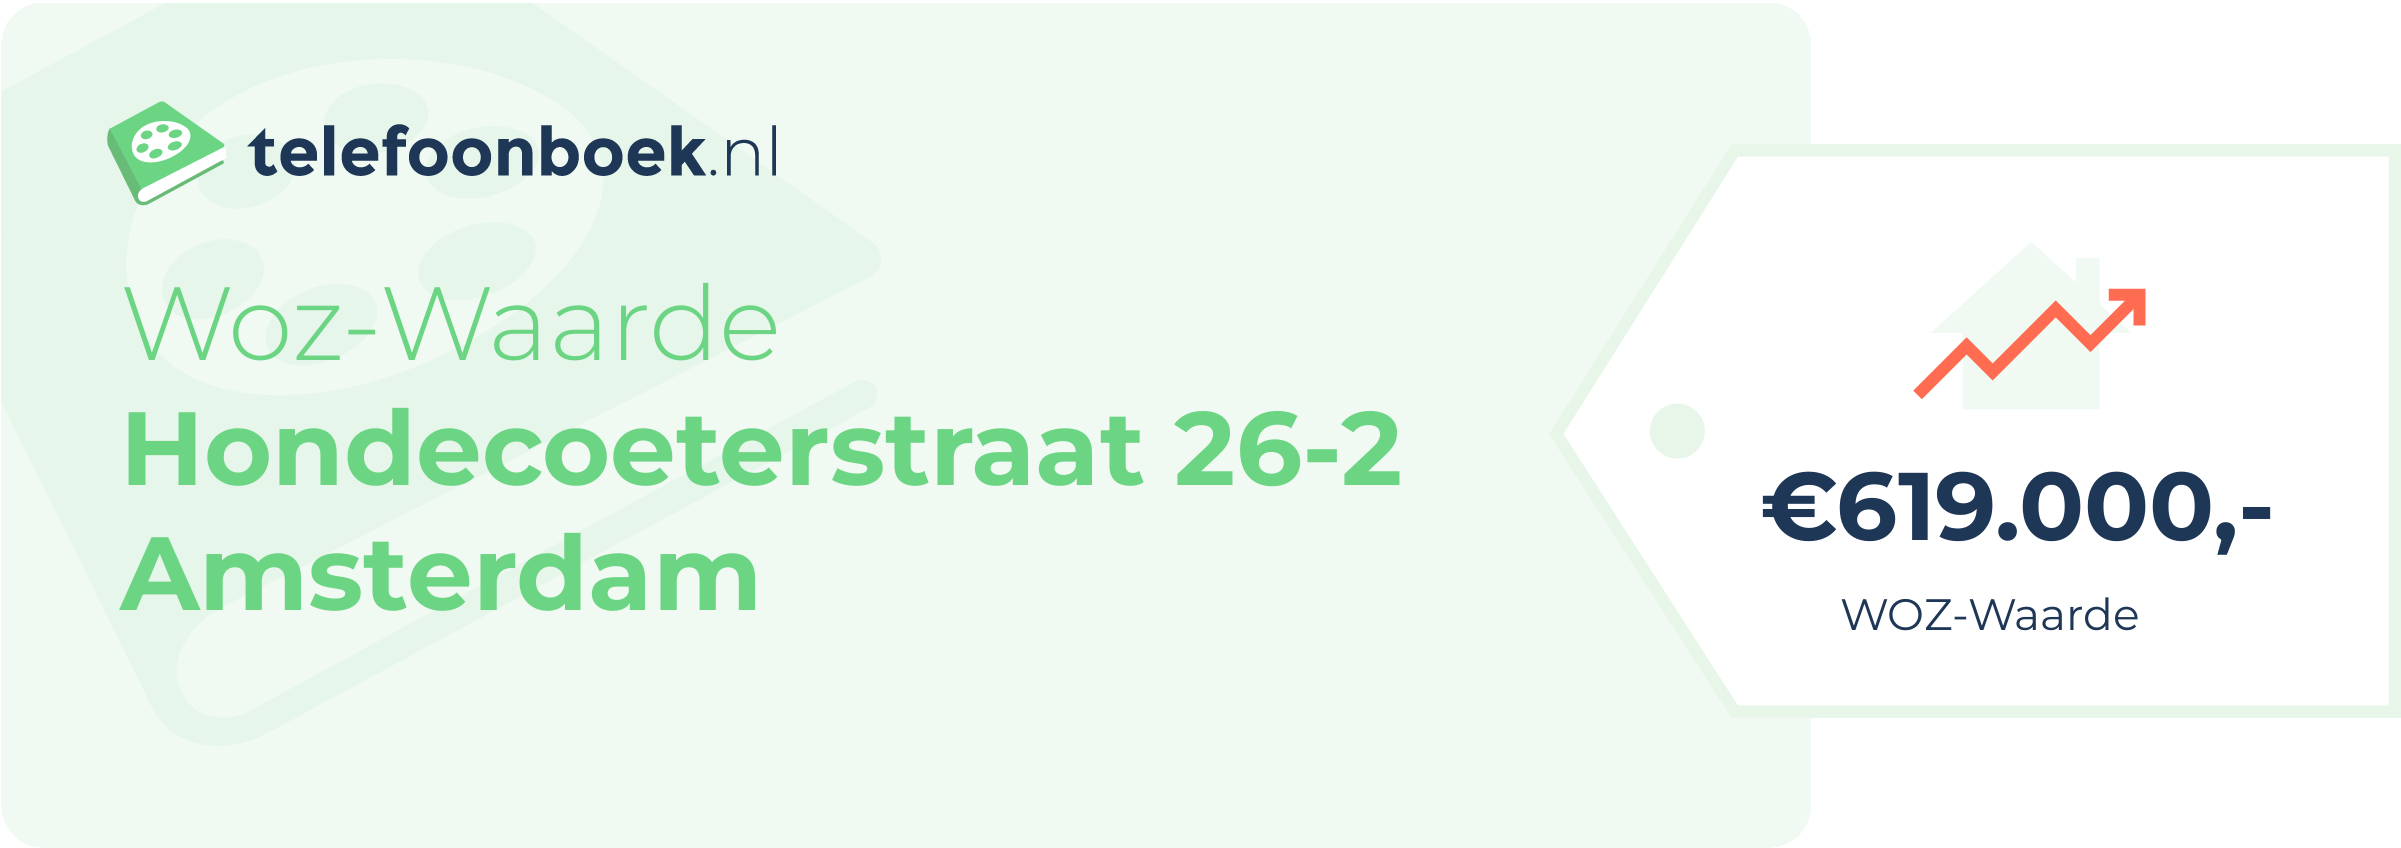 WOZ-waarde Hondecoeterstraat 26-2 Amsterdam